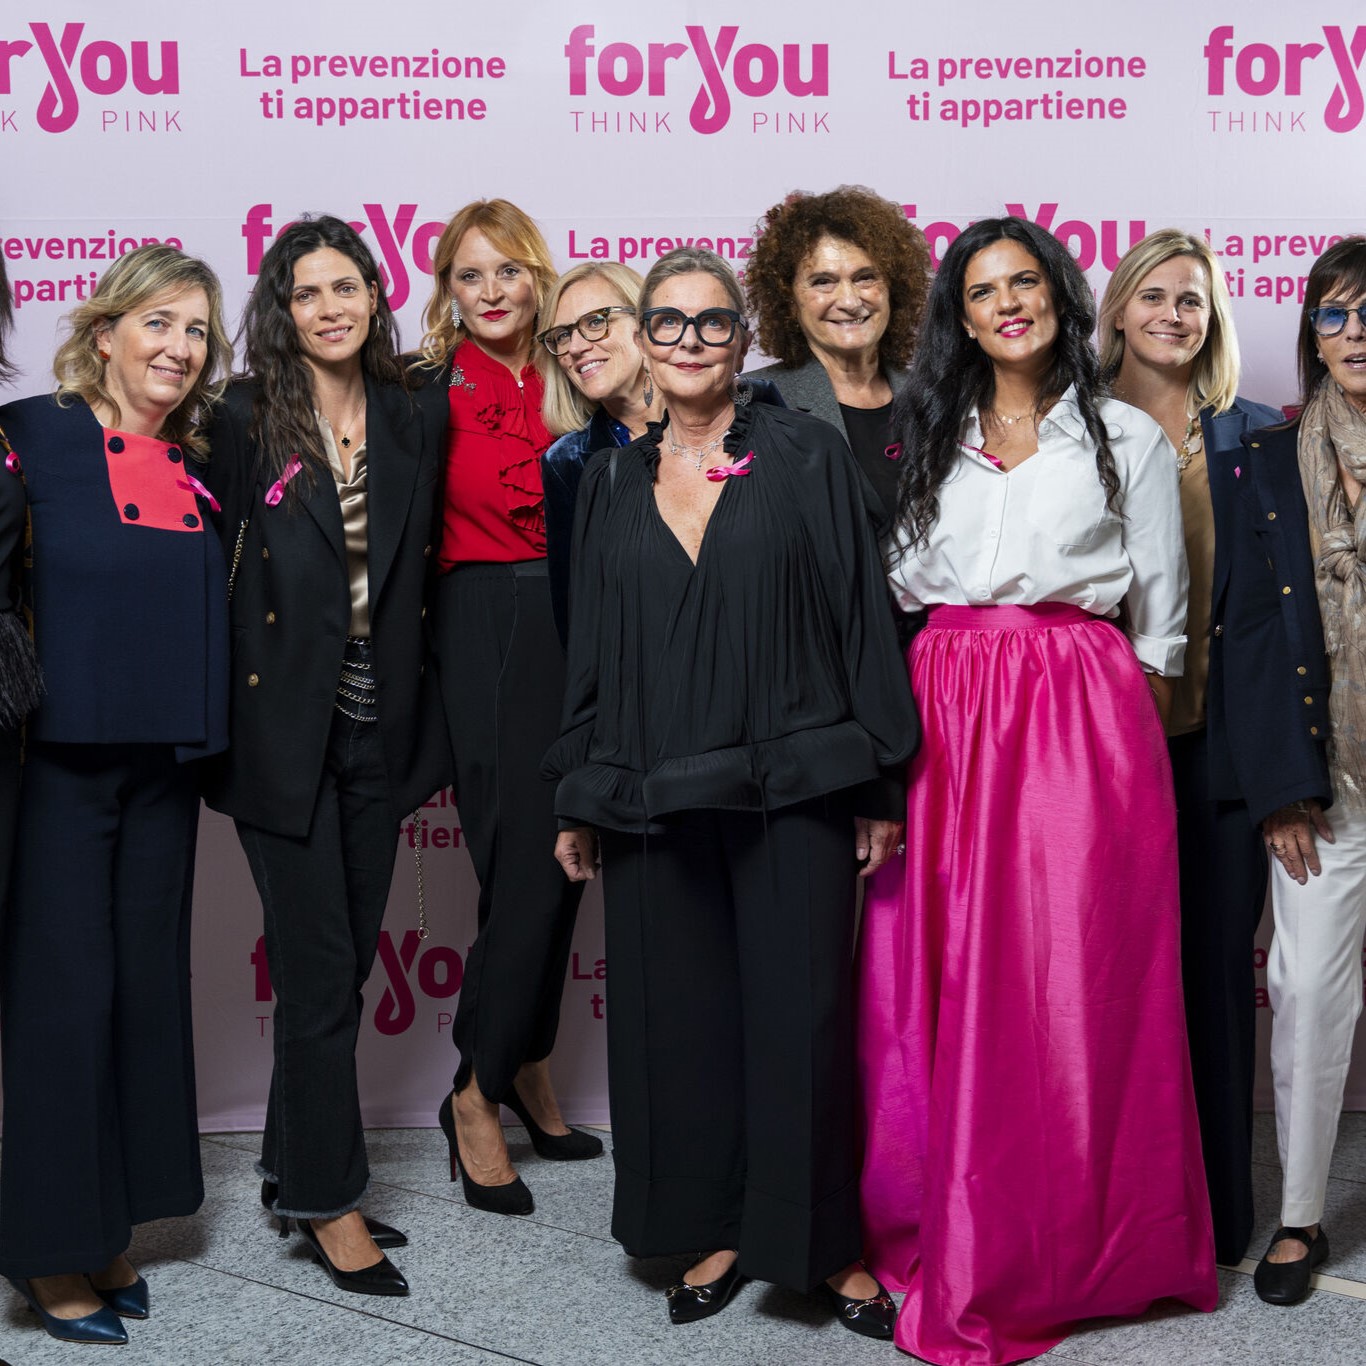 Unione di forze per la prevenzione: l'evento del progetto For You nel mese della sensibilizzazione sul cancro al seno